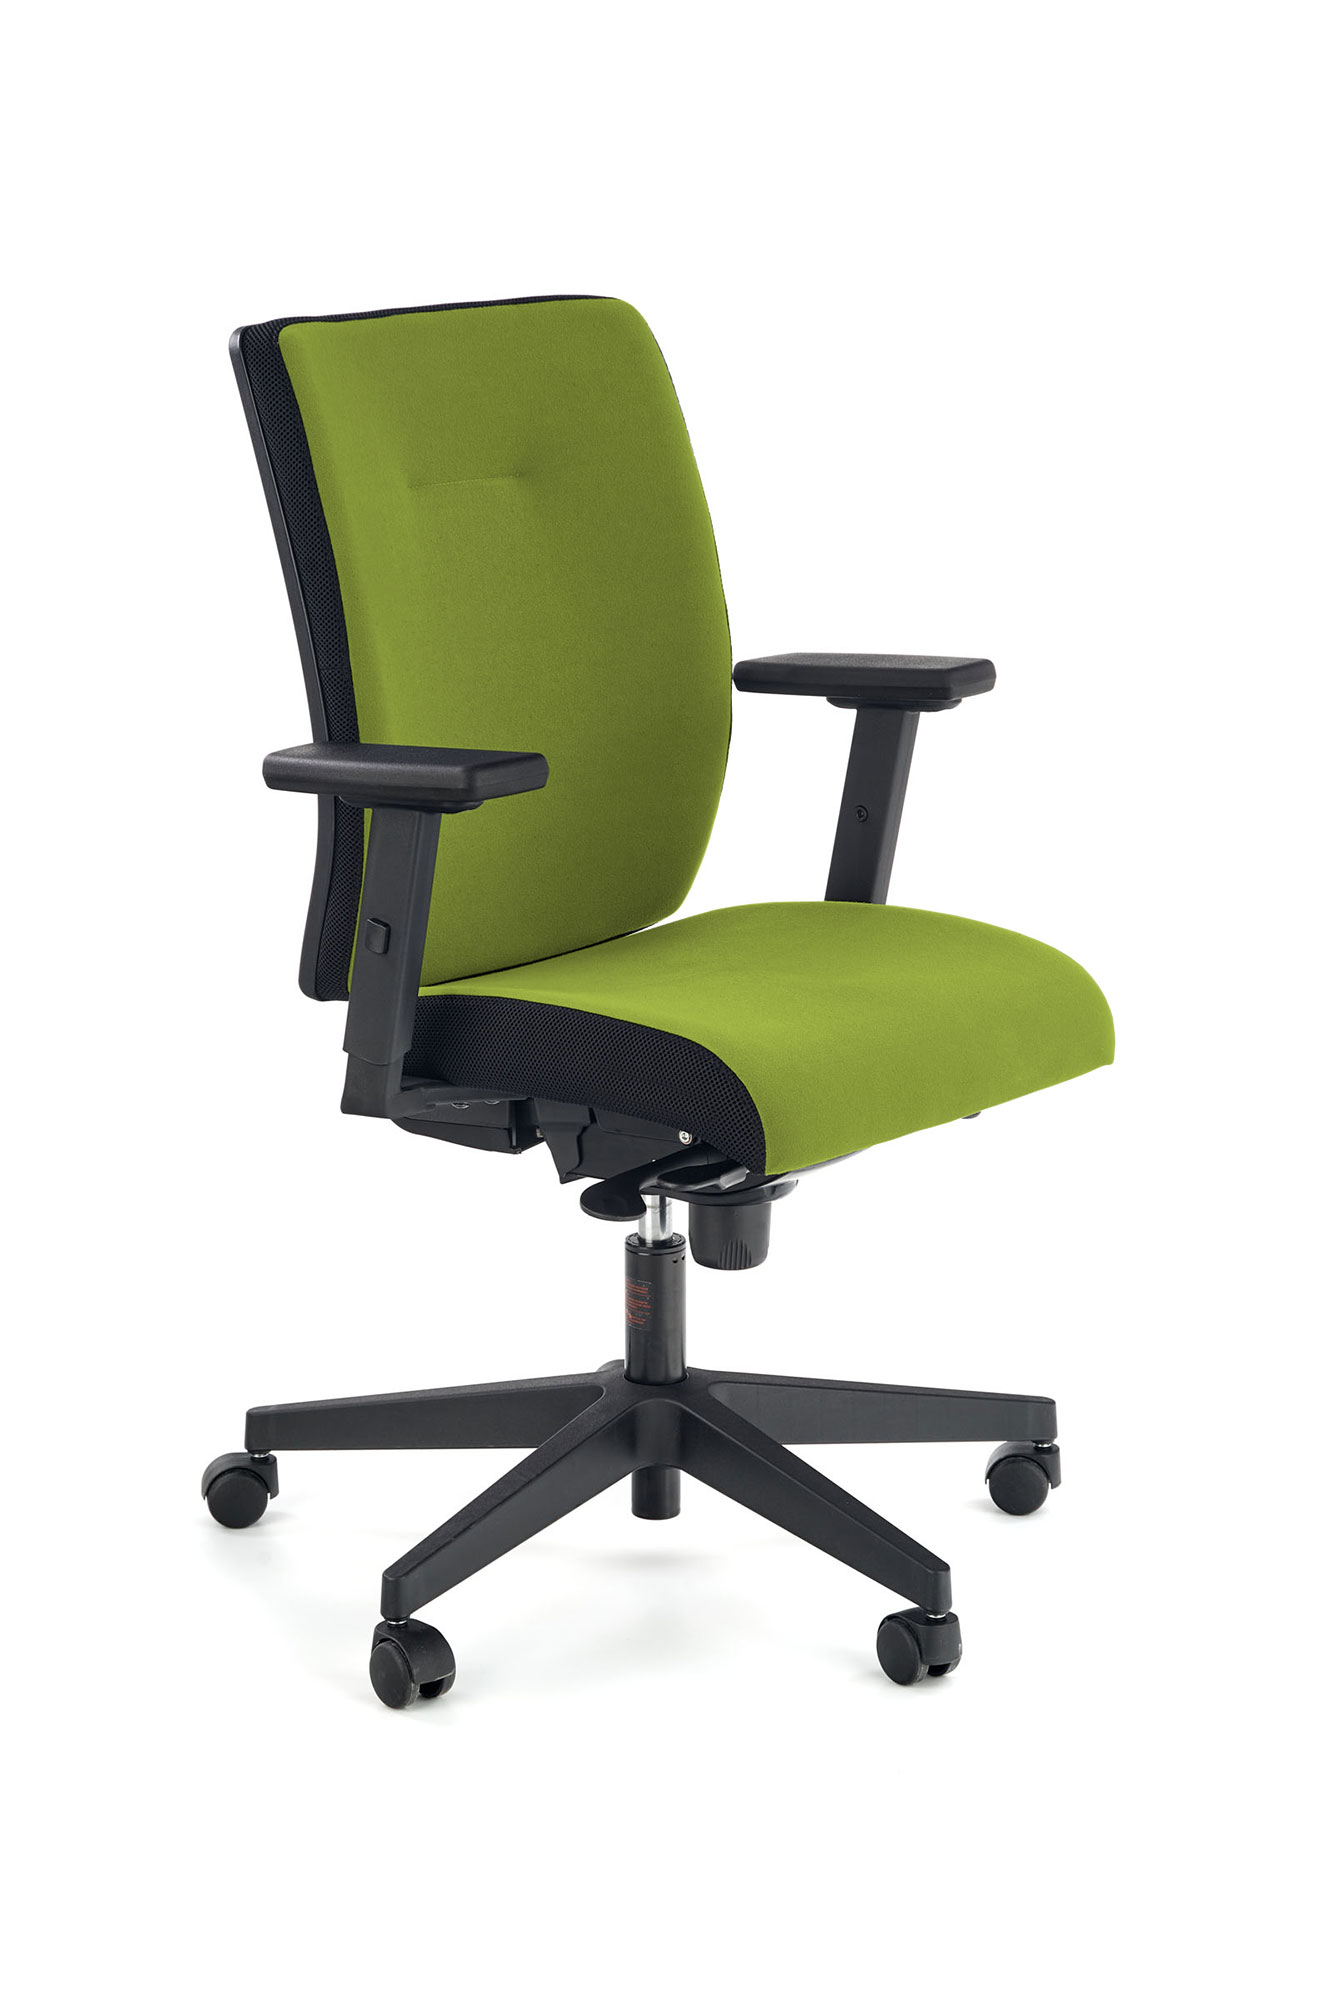 POP fotel pracowniczy, kolor: pasek boczny - czarny, front - zielony